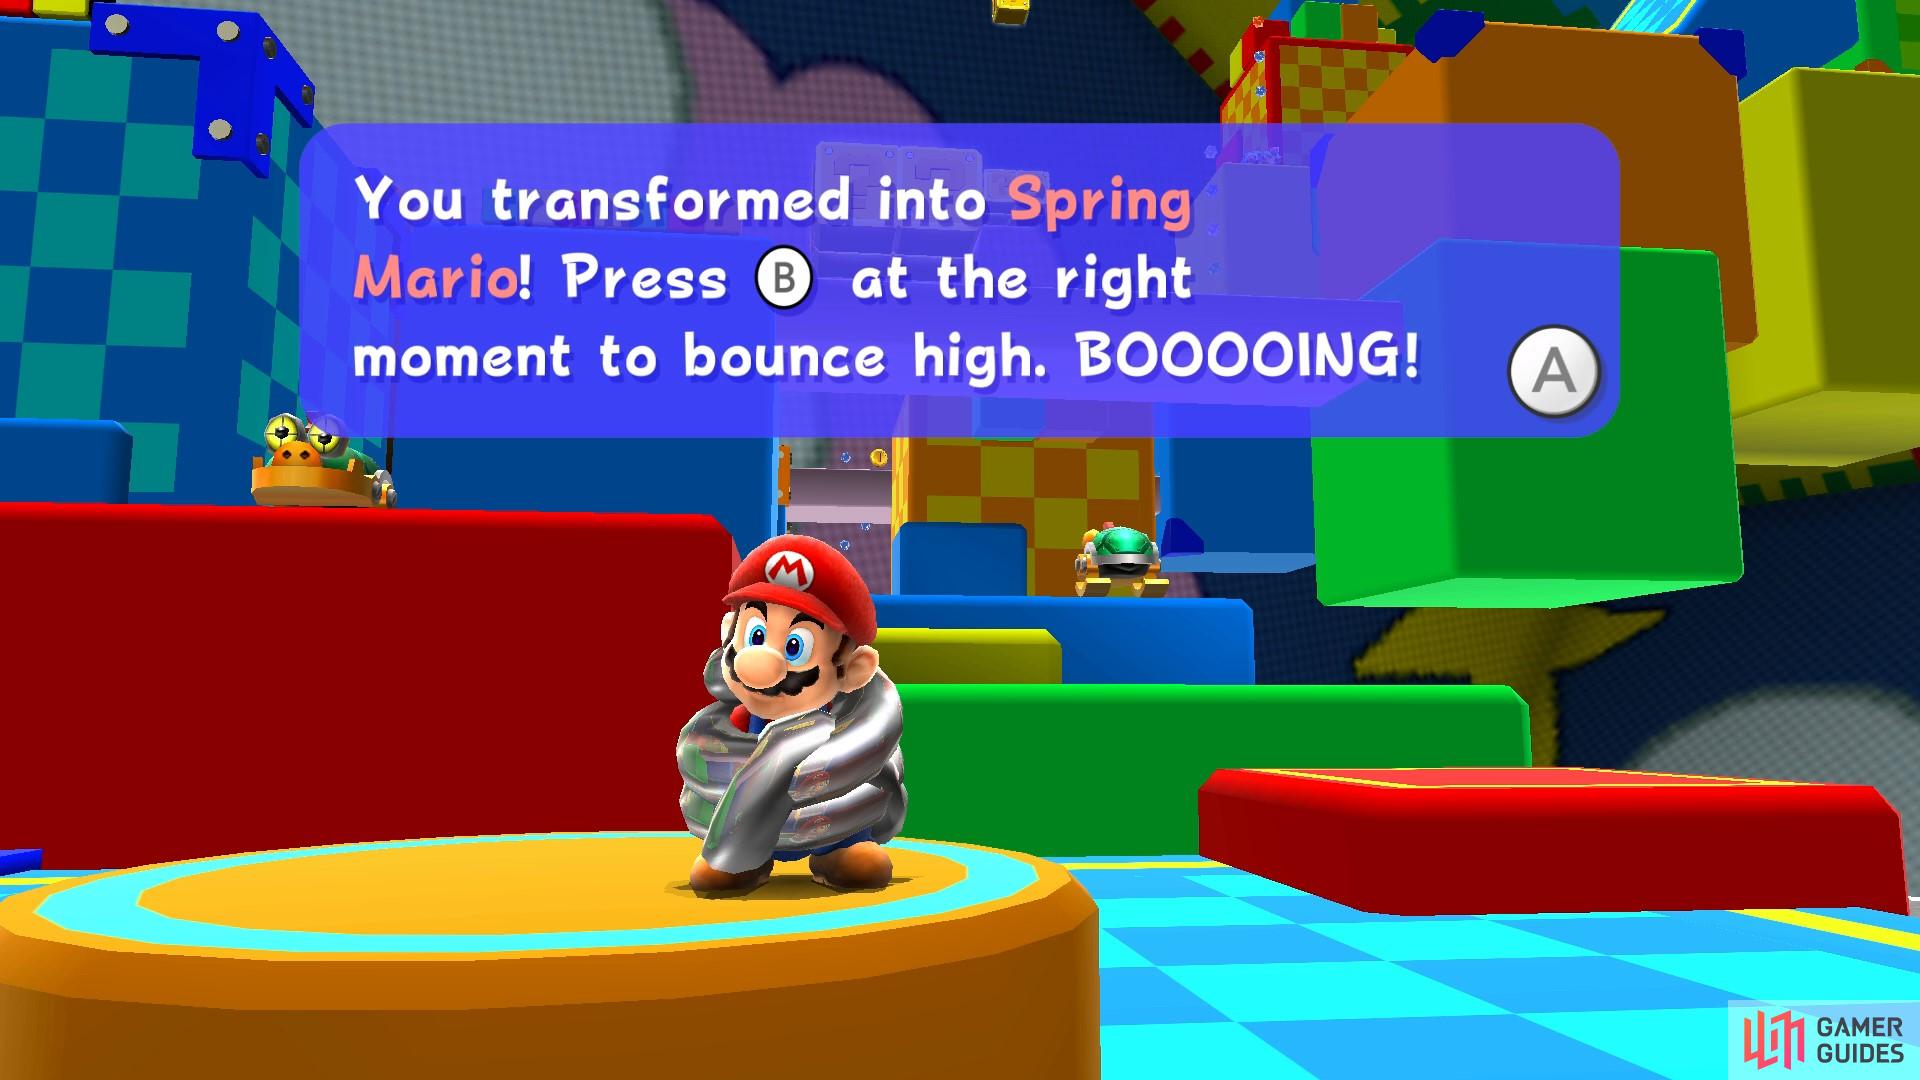 Spring Mario can bounce very high!